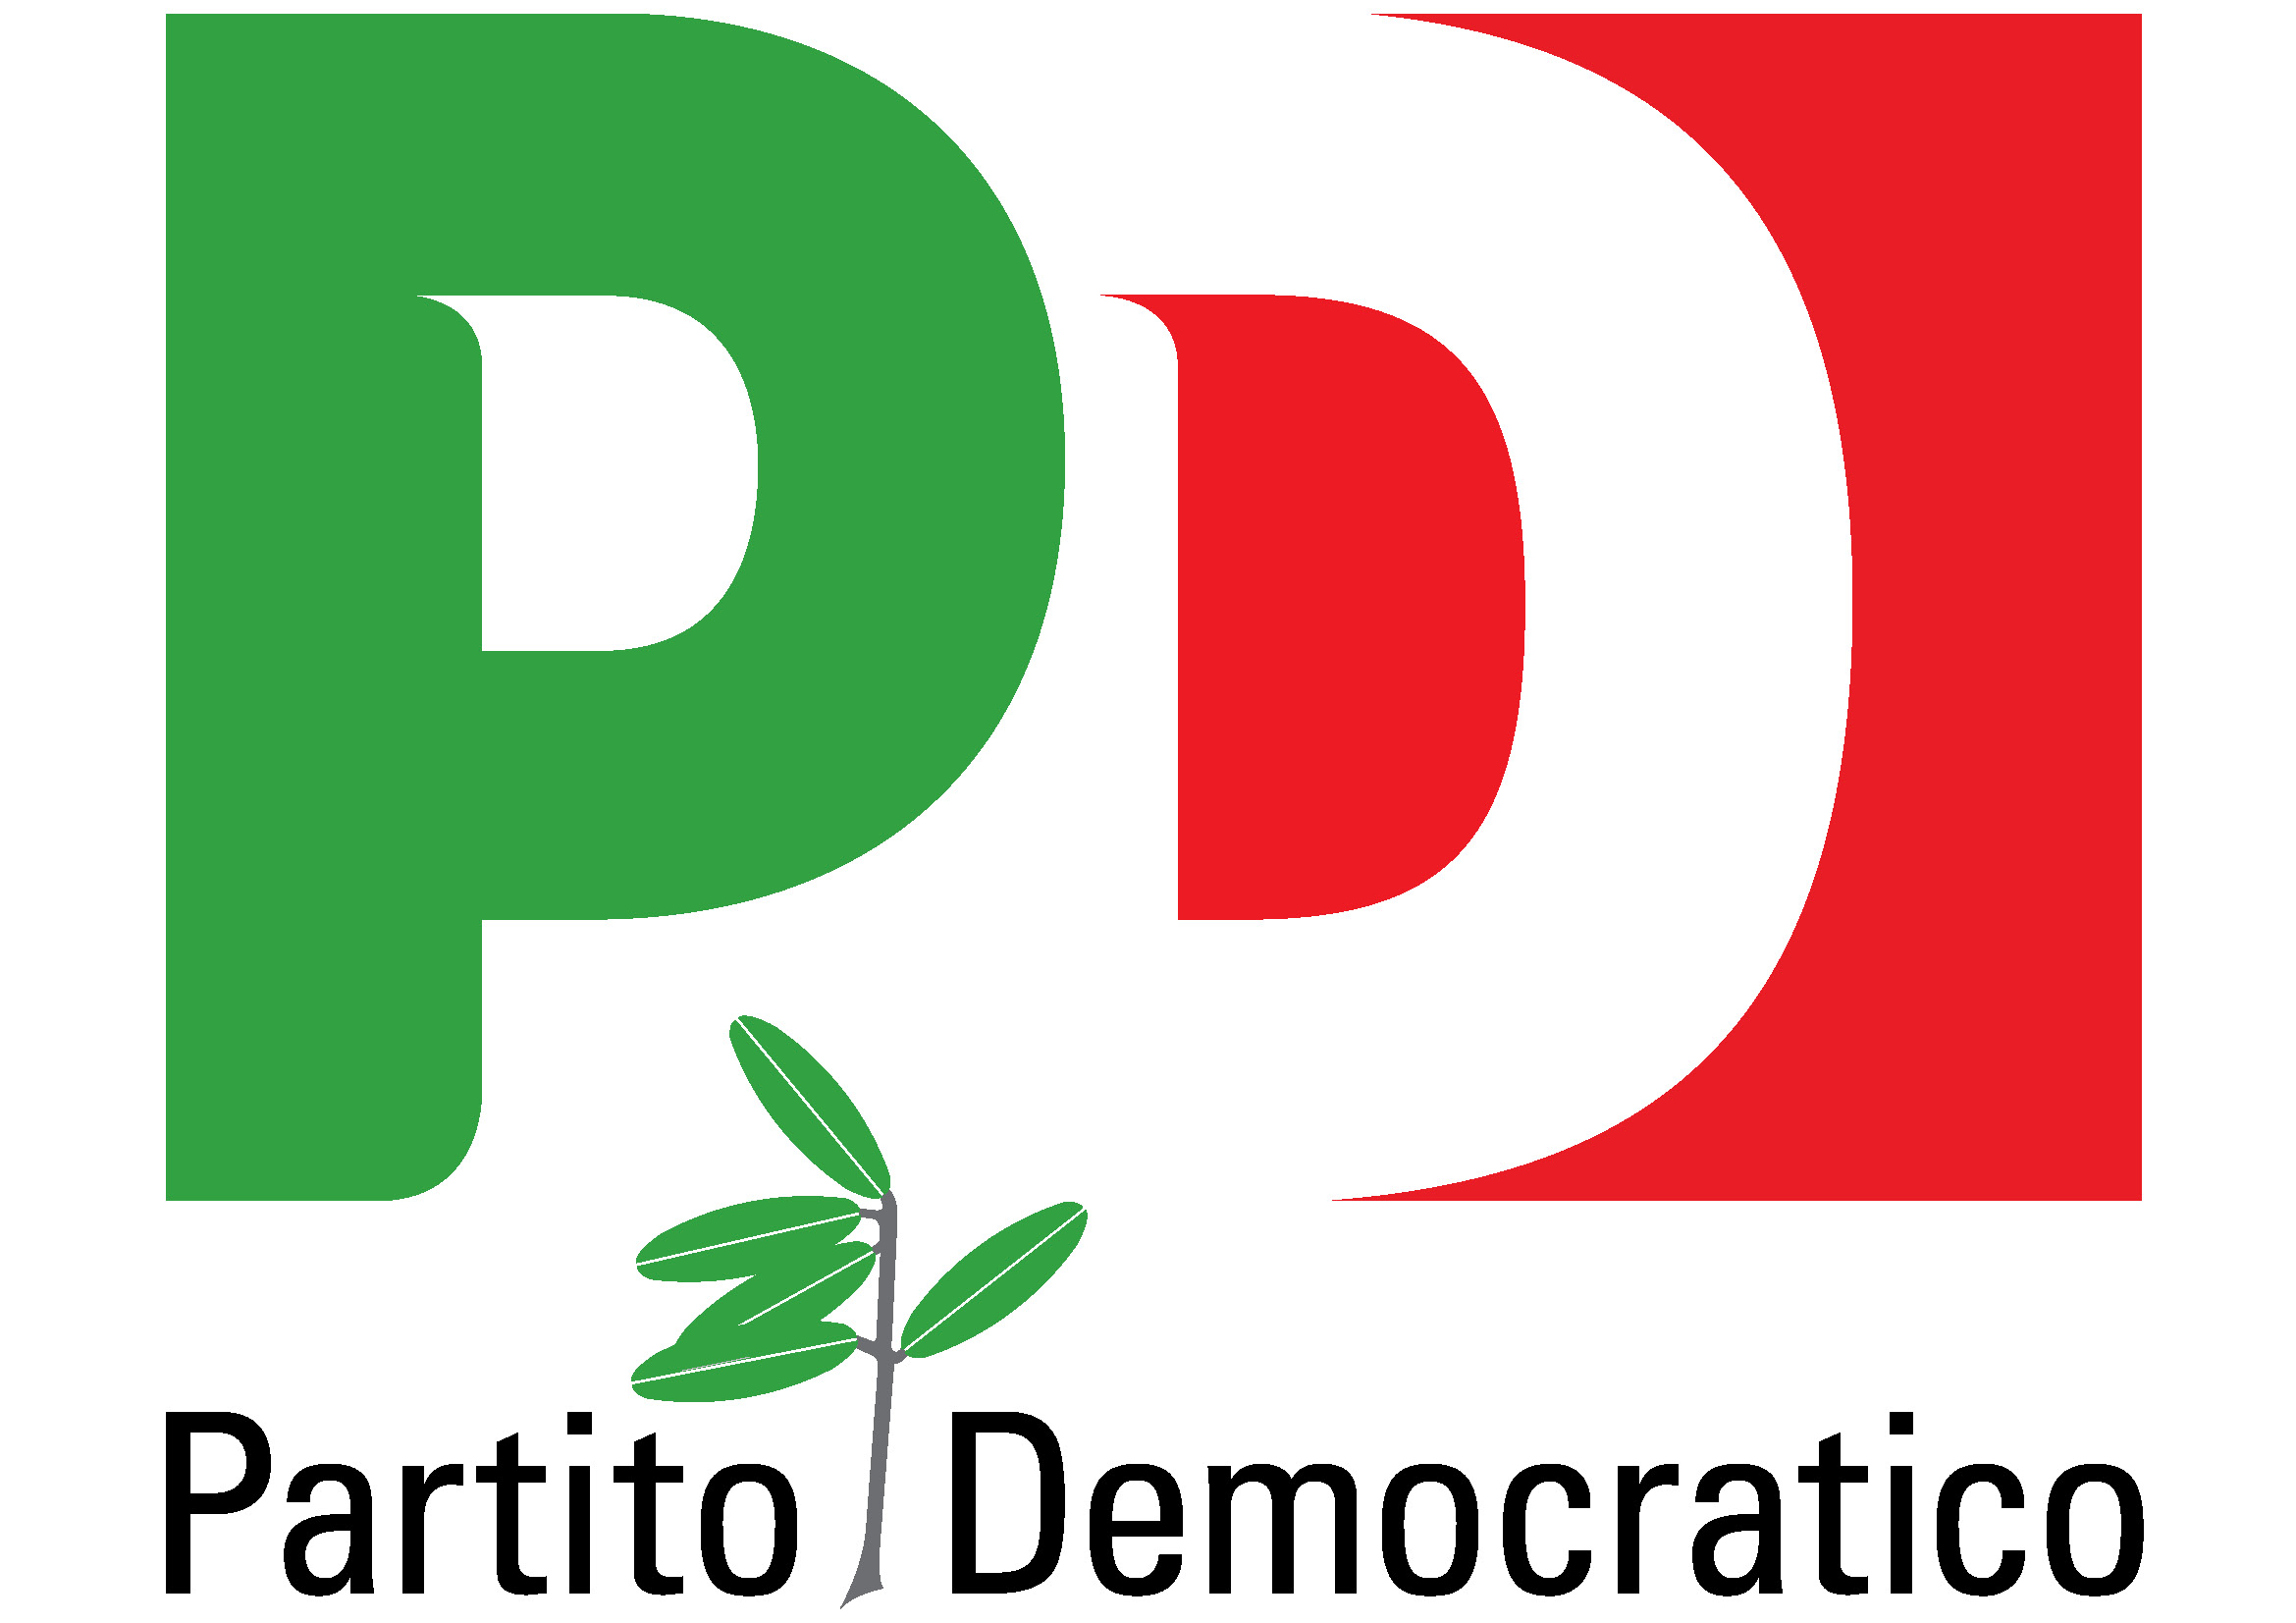 FRAGAGNANO. Partito Democratico: “Rendere trasparente la politica attraverso il sito istituzionale del Comune di Fragagnano”